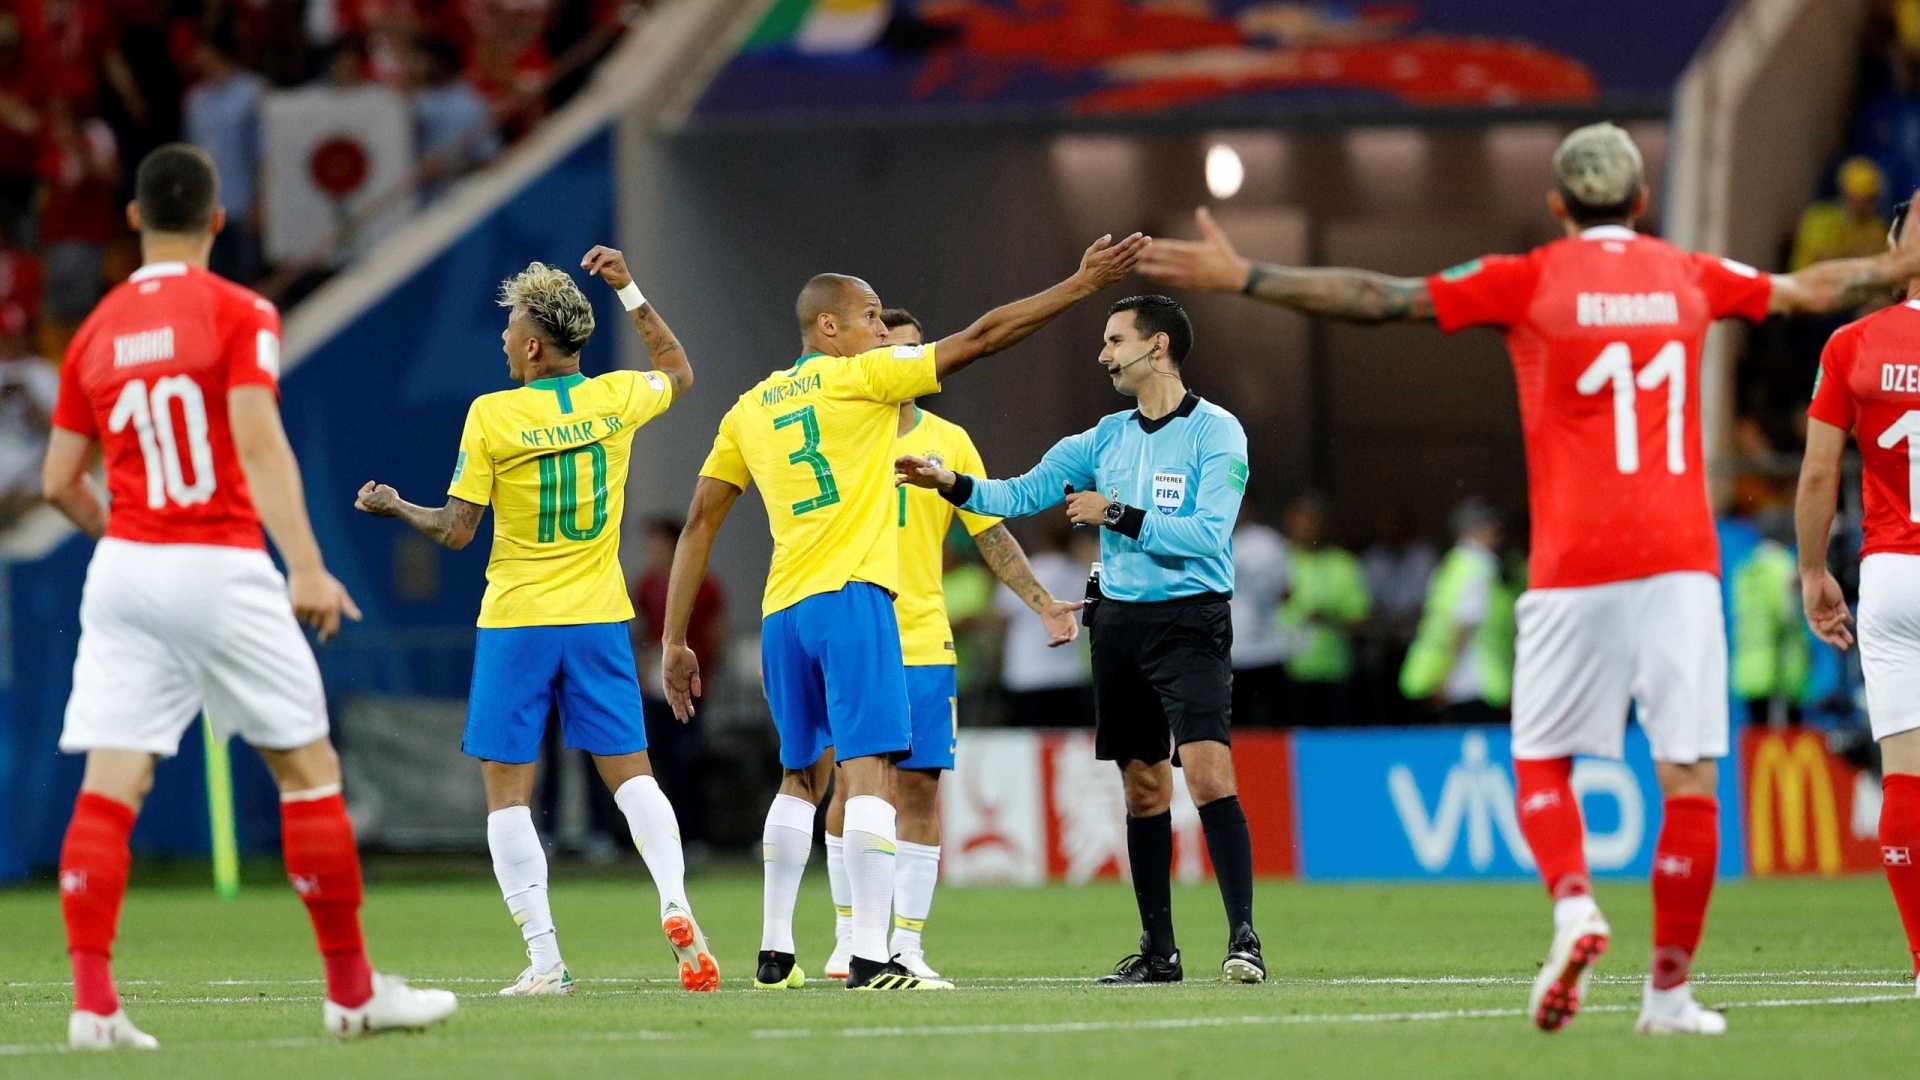 Imagem do jogo entre Brasil e Suíça